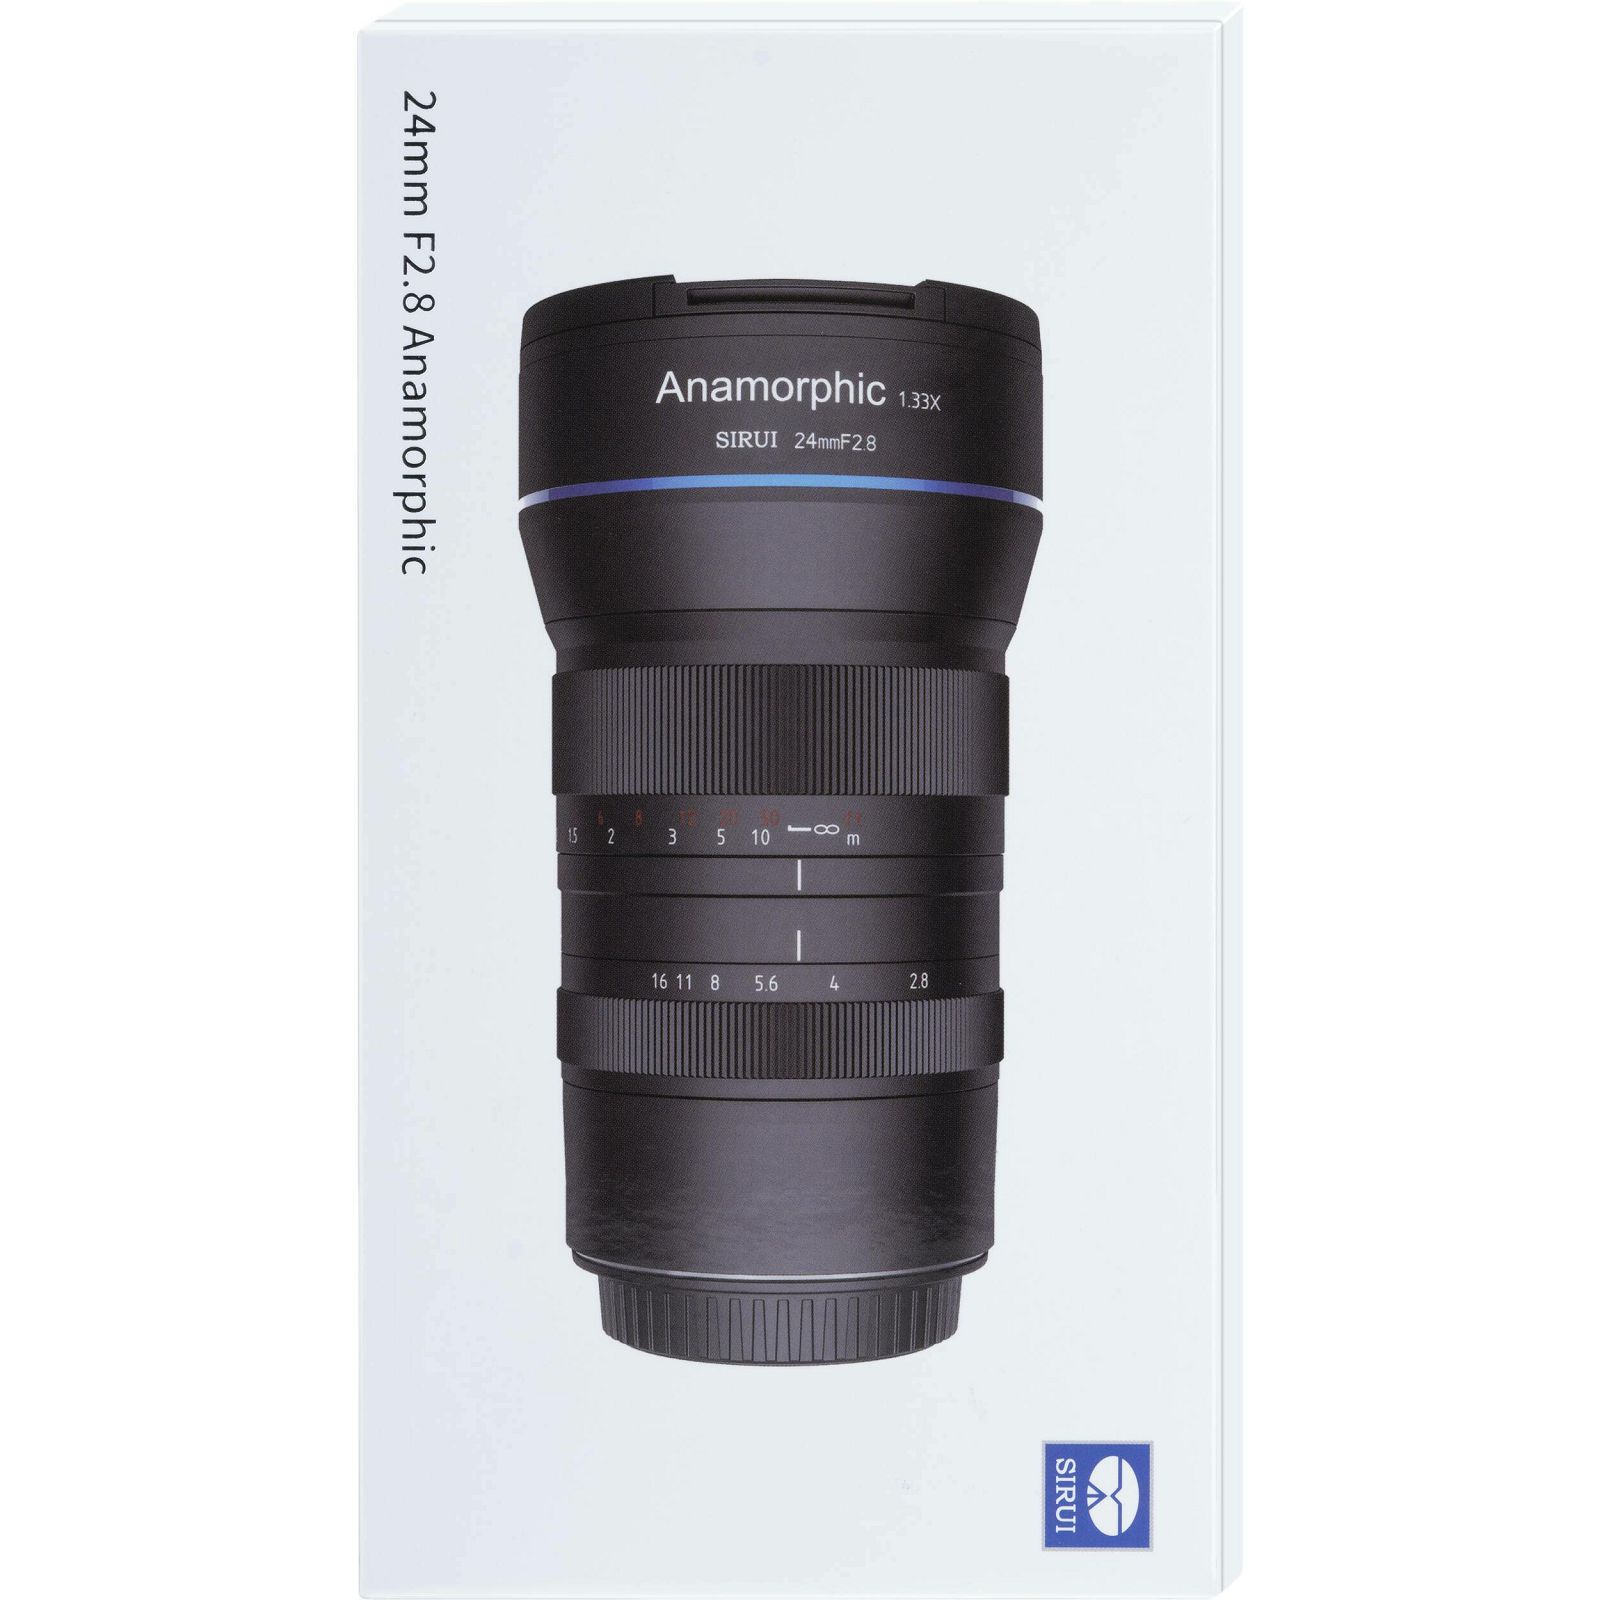 Sirui 24mm f/2.8 1.33x Anamorphic lens objektiv za Fujifilm X (SR24-X)